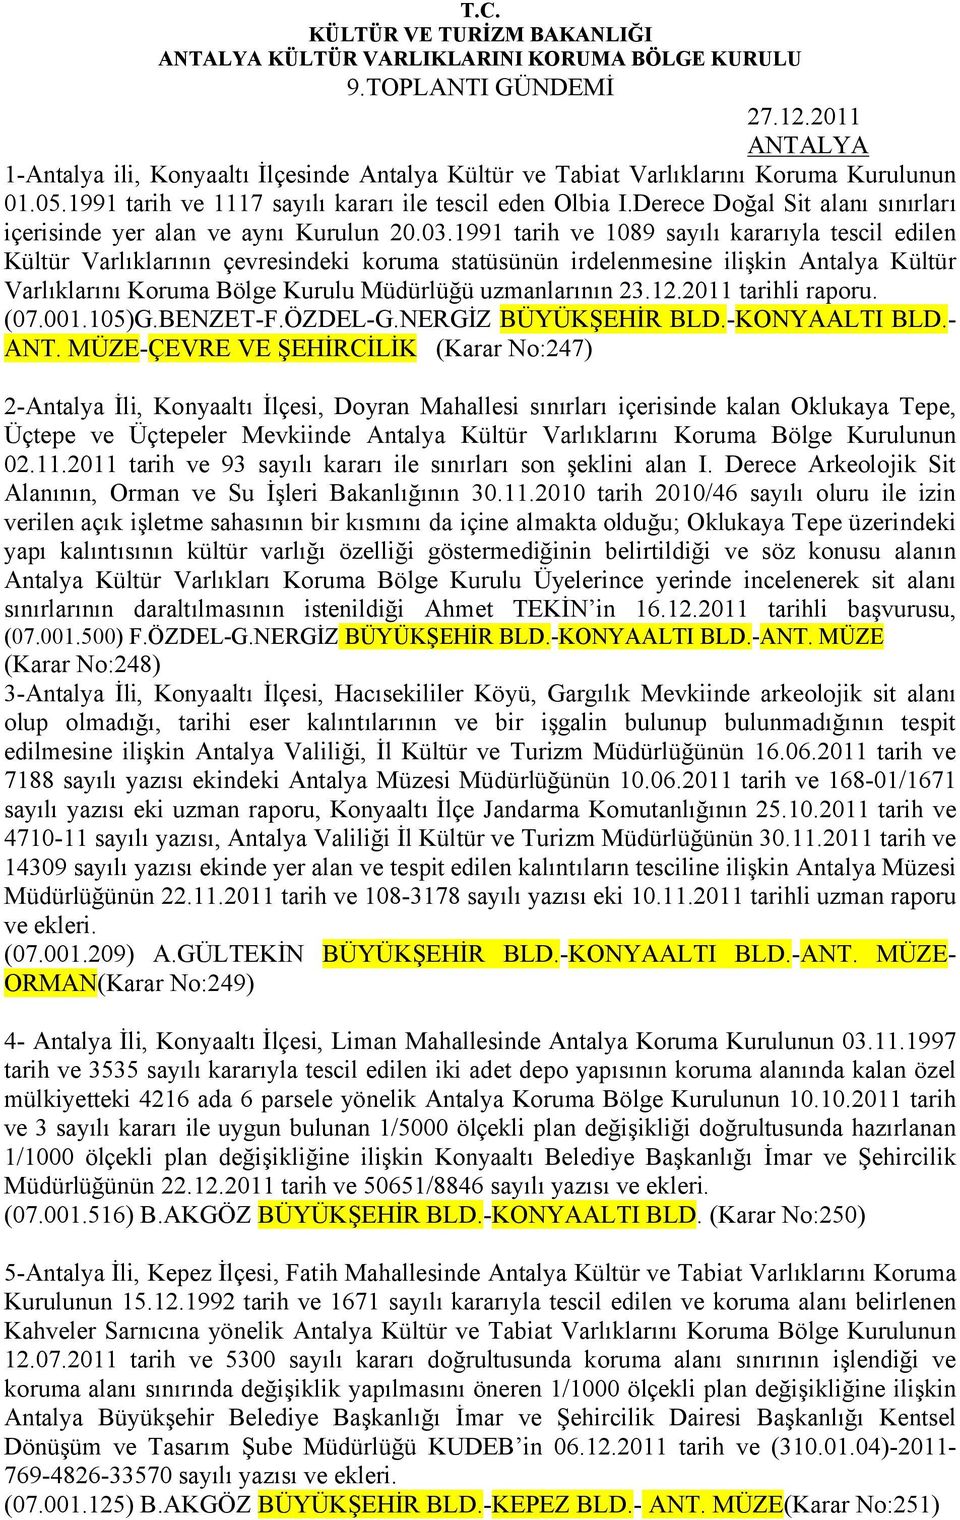 1991 tarih ve 1089 sayılı kararıyla tescil edilen Kültür Varlıklarının çevresindeki koruma statüsünün irdelenmesine ilişkin Antalya Kültür Varlıklarını Koruma Bölge Kurulu Müdürlüğü uzmanlarının 23.